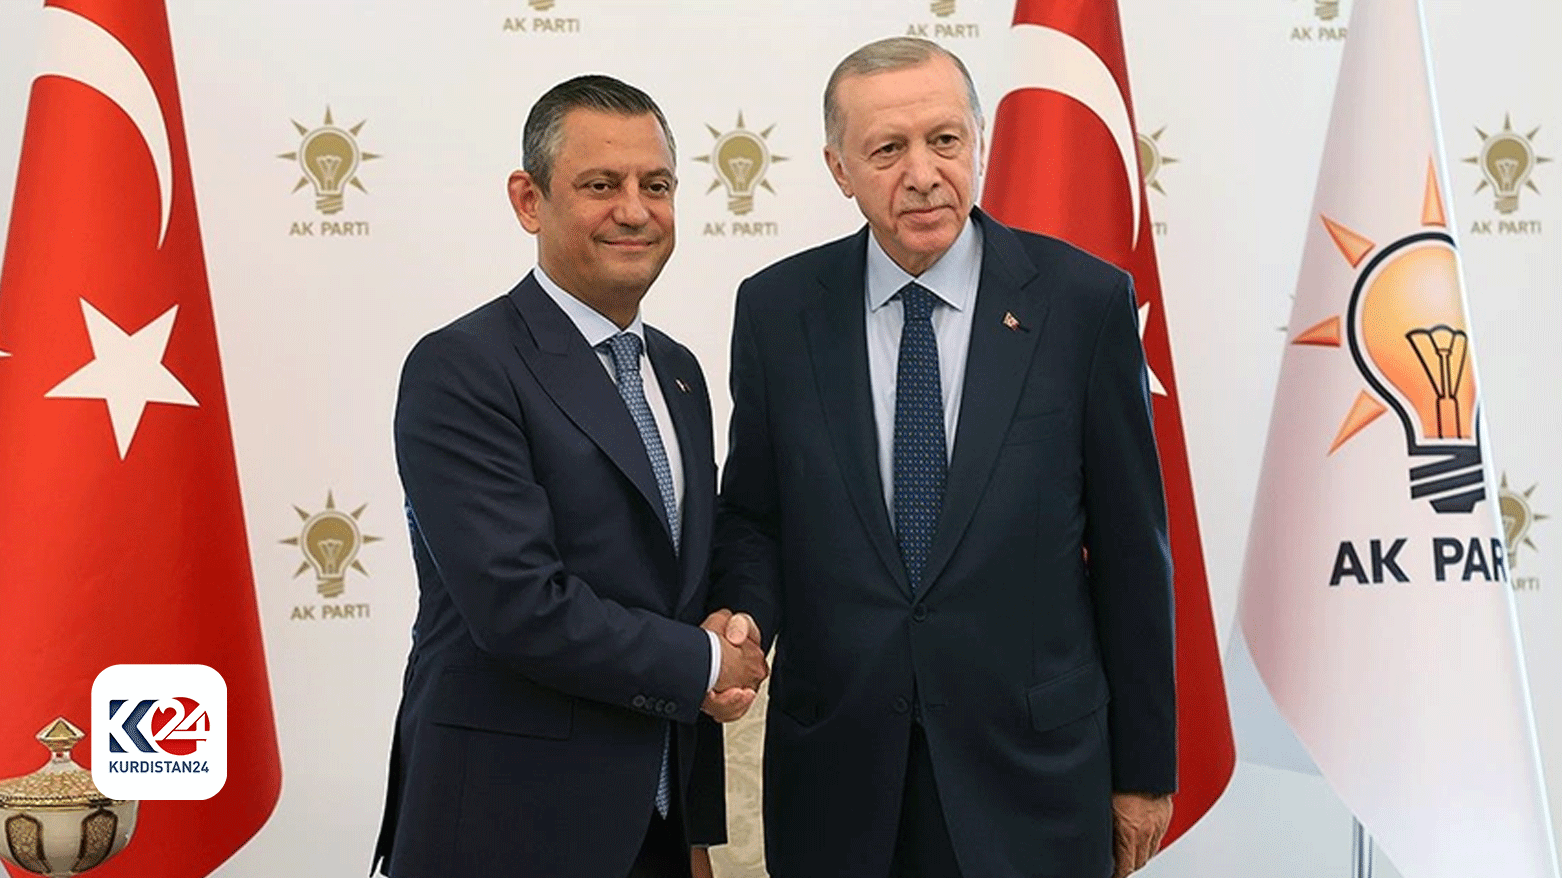 رئيس حزب العدالة والتنمية رجب طيب أردوغان ورئيس حزب الشعب الجمهوري أوزغور أوزيل